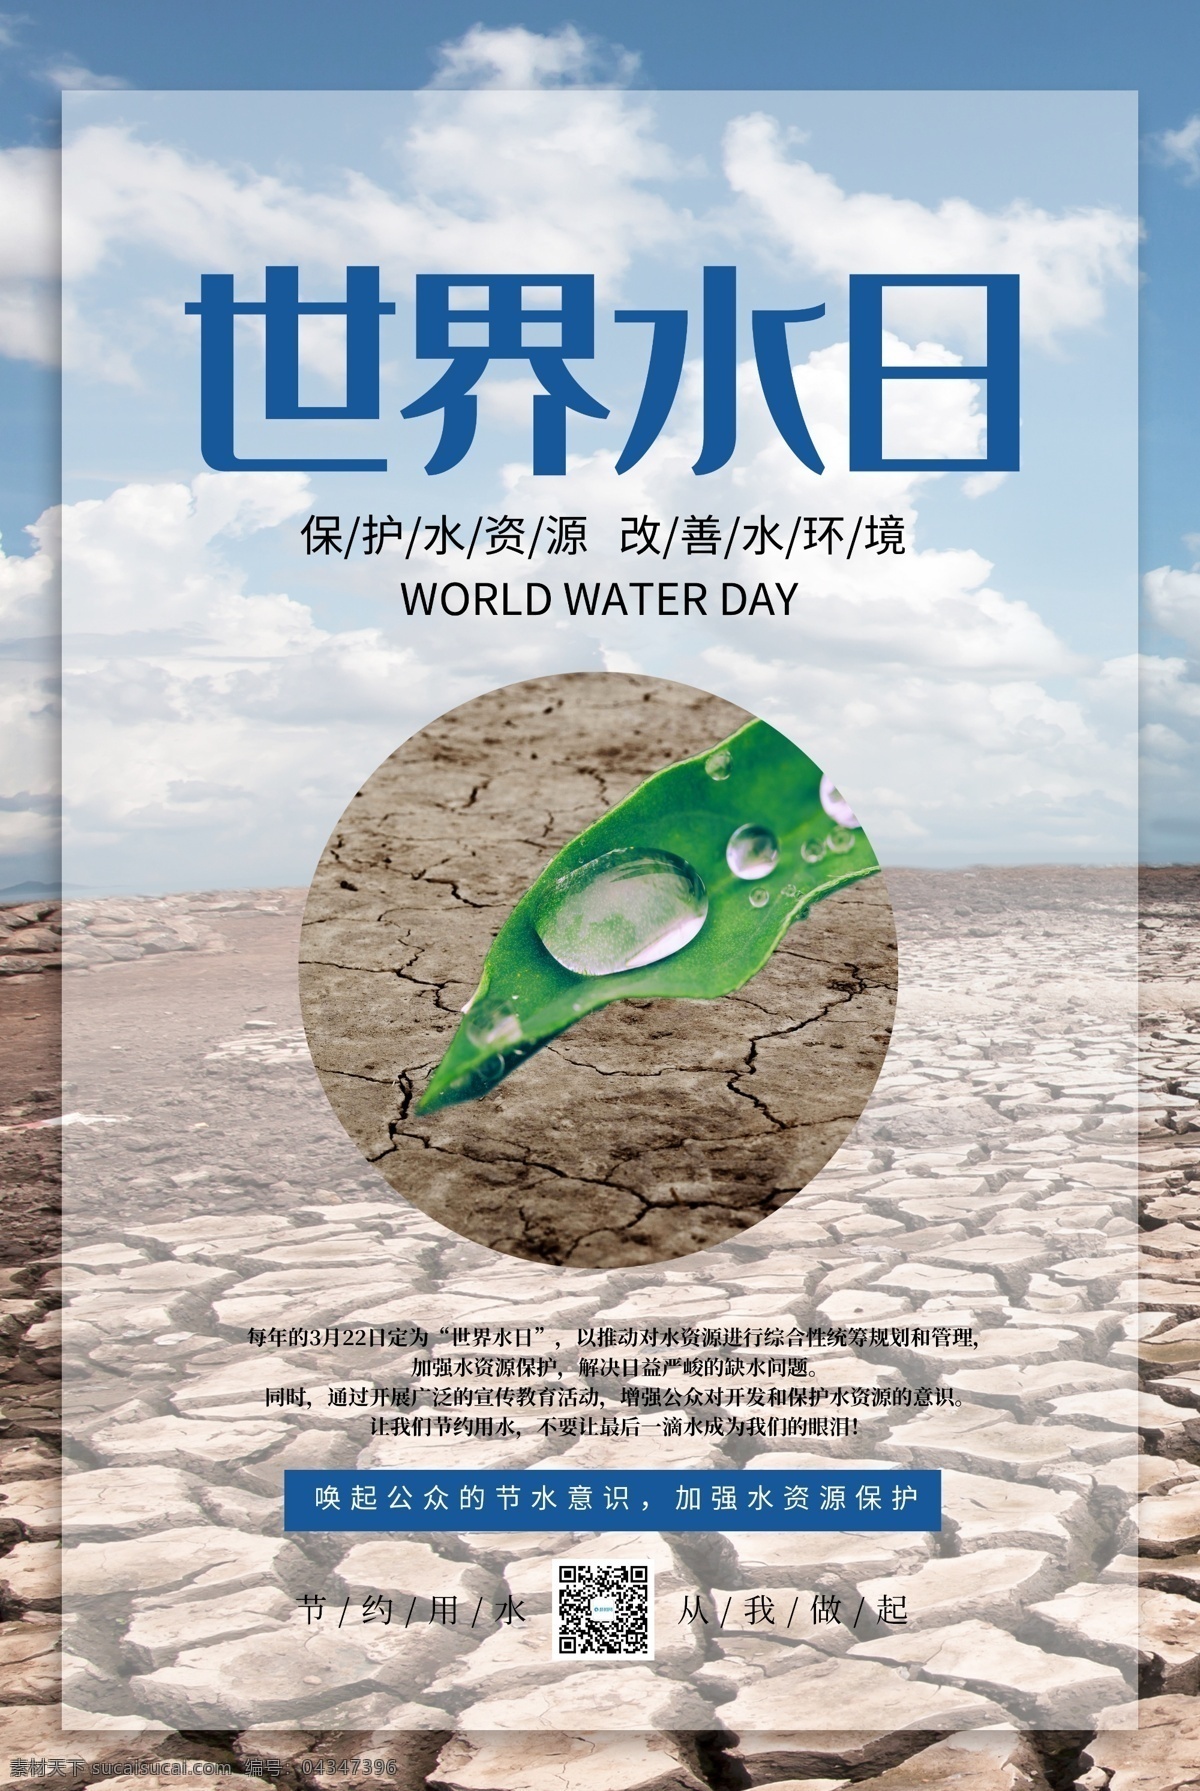 简约 世界 水日 海报 世界水日 3月22日 节约用水 节水 缺水 保护水资源 地球干涸 水资源 保护地球